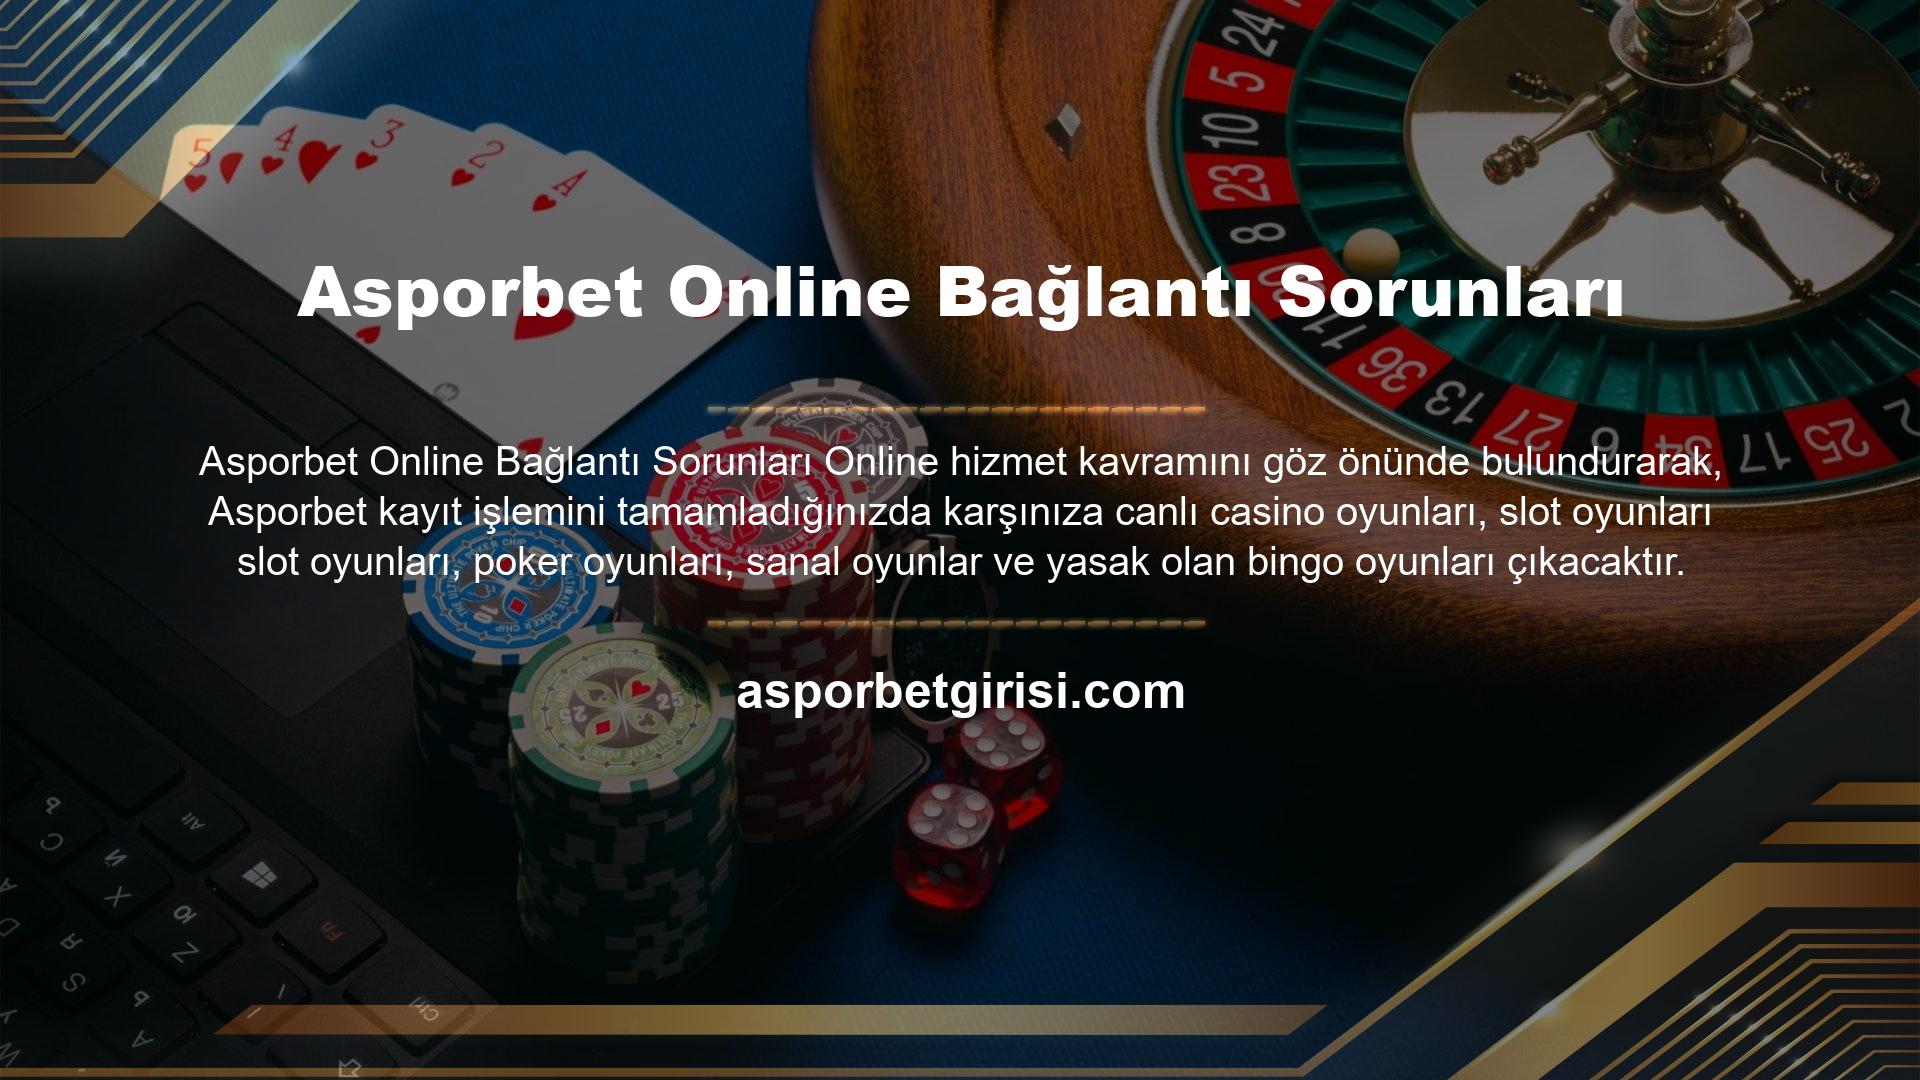 Türkiye meyve Kumar Seçenekleri Tüm bu sebeplerden dolayı Asporbet Türkiye'de yasaklanan site Asporbet Kumar Hizmetleri online oyunlar çok çeşitlidir